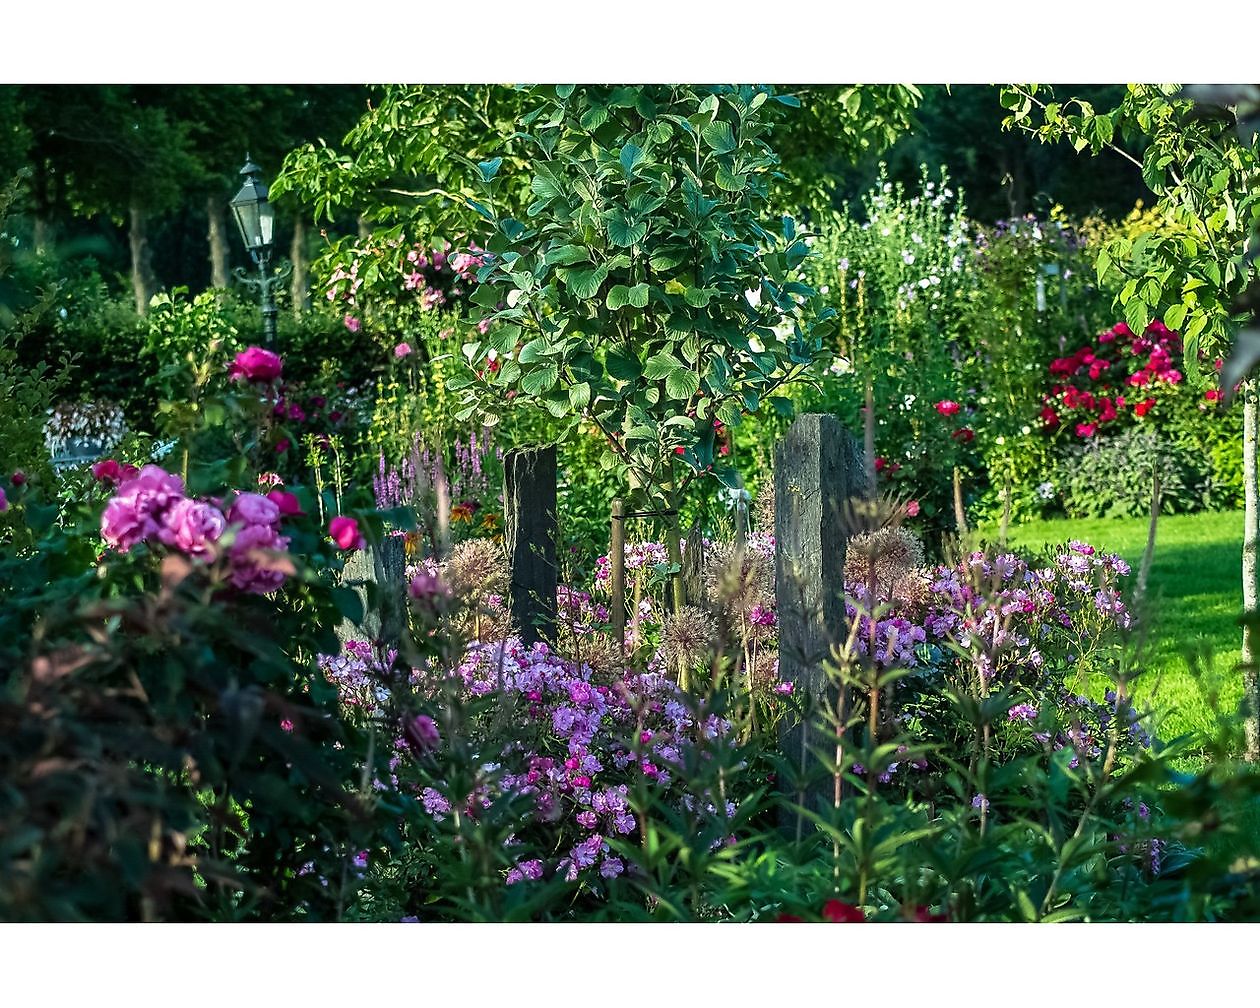 Bloemakkershof - Het Tuinpad Op / In Nachbars Garten